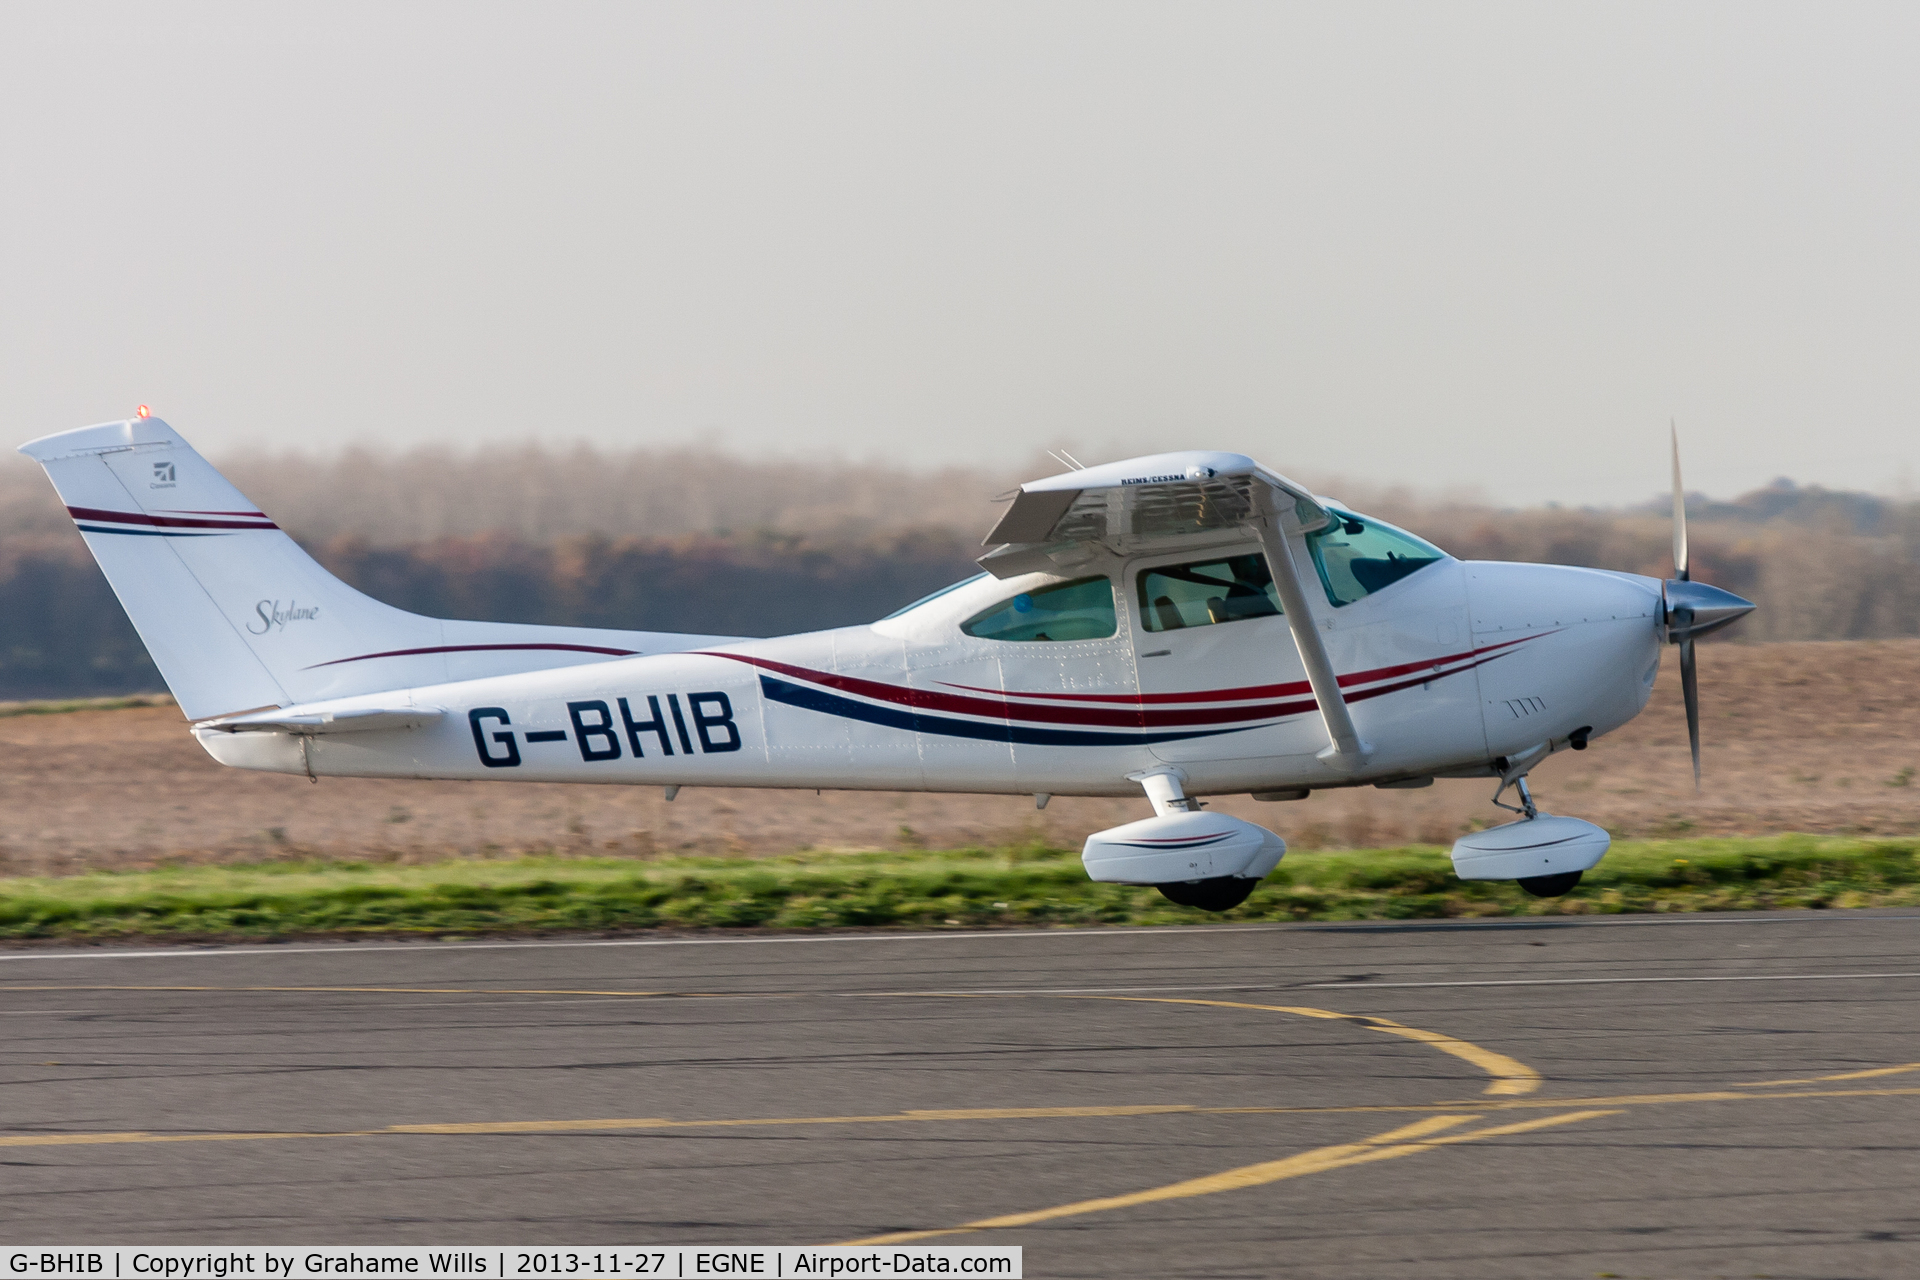 G-BHIB, 1980 Reims F182Q Skylane C/N 0134, Cessna F182Q Skylane G-BHIB, Gamston 27/11/13